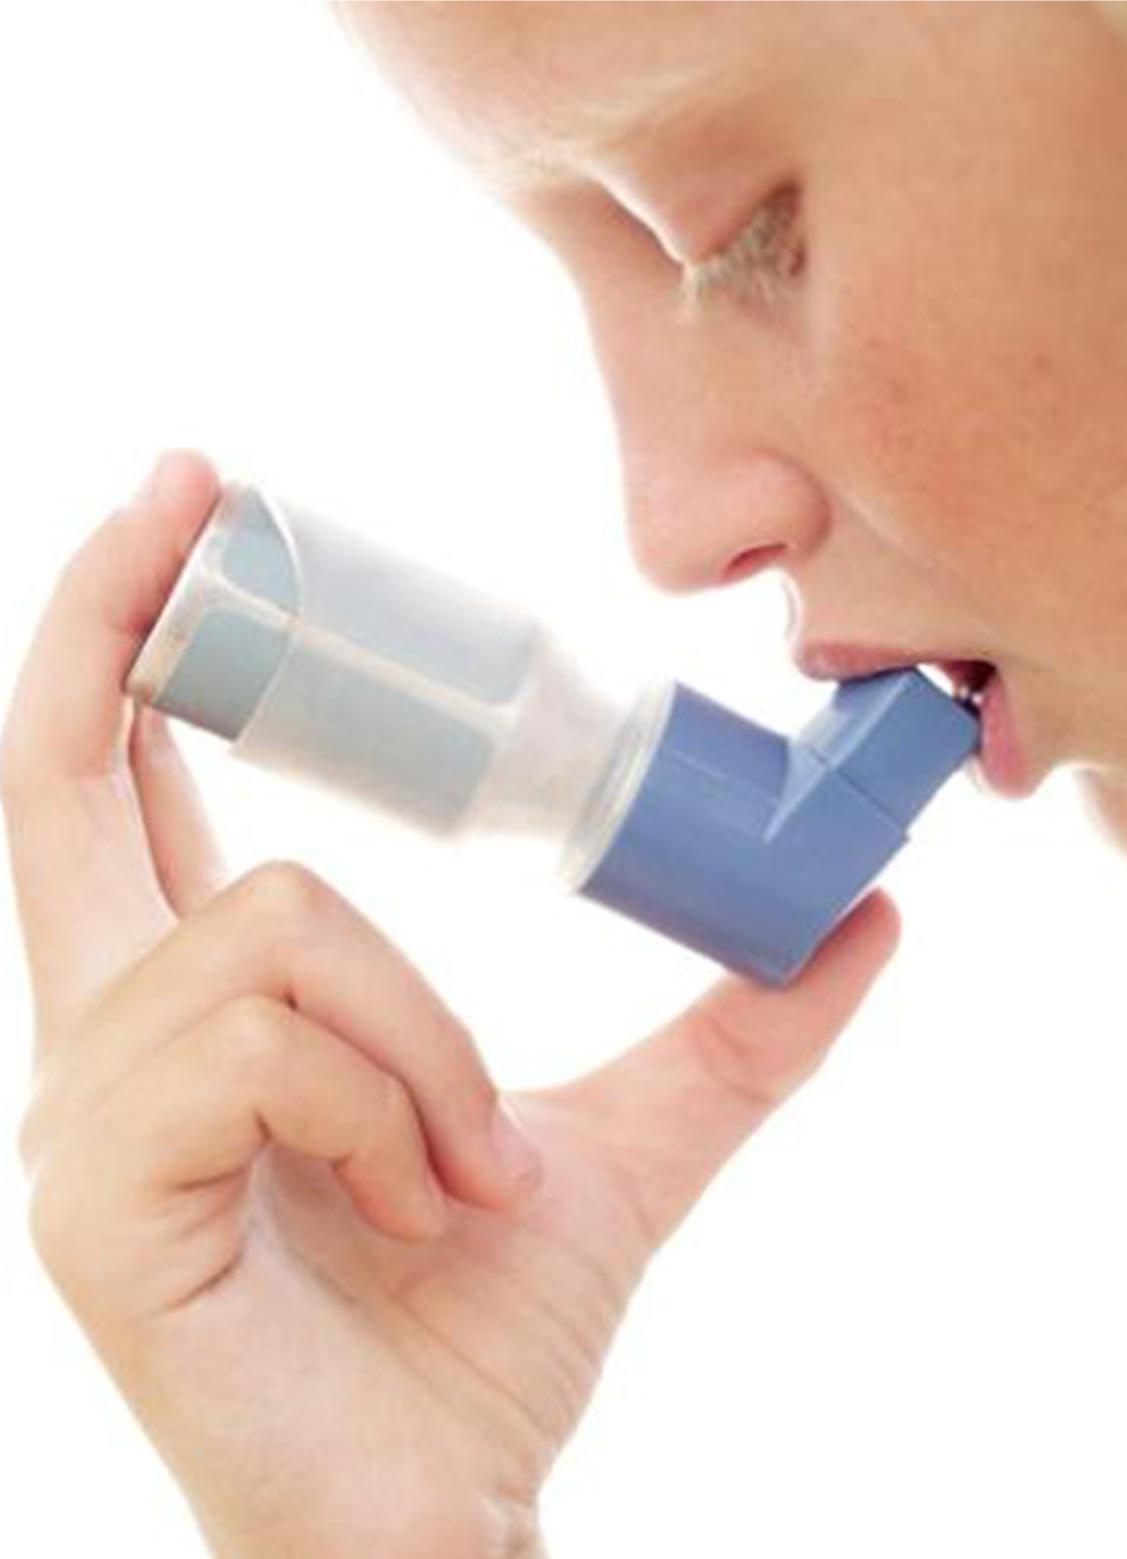 Бронхиальная астма называют. Ингалятор при астме. Карманный ингалятор при бронхиальной астме. Человек с ингалятором. Ингалятор для астматиков человеку.